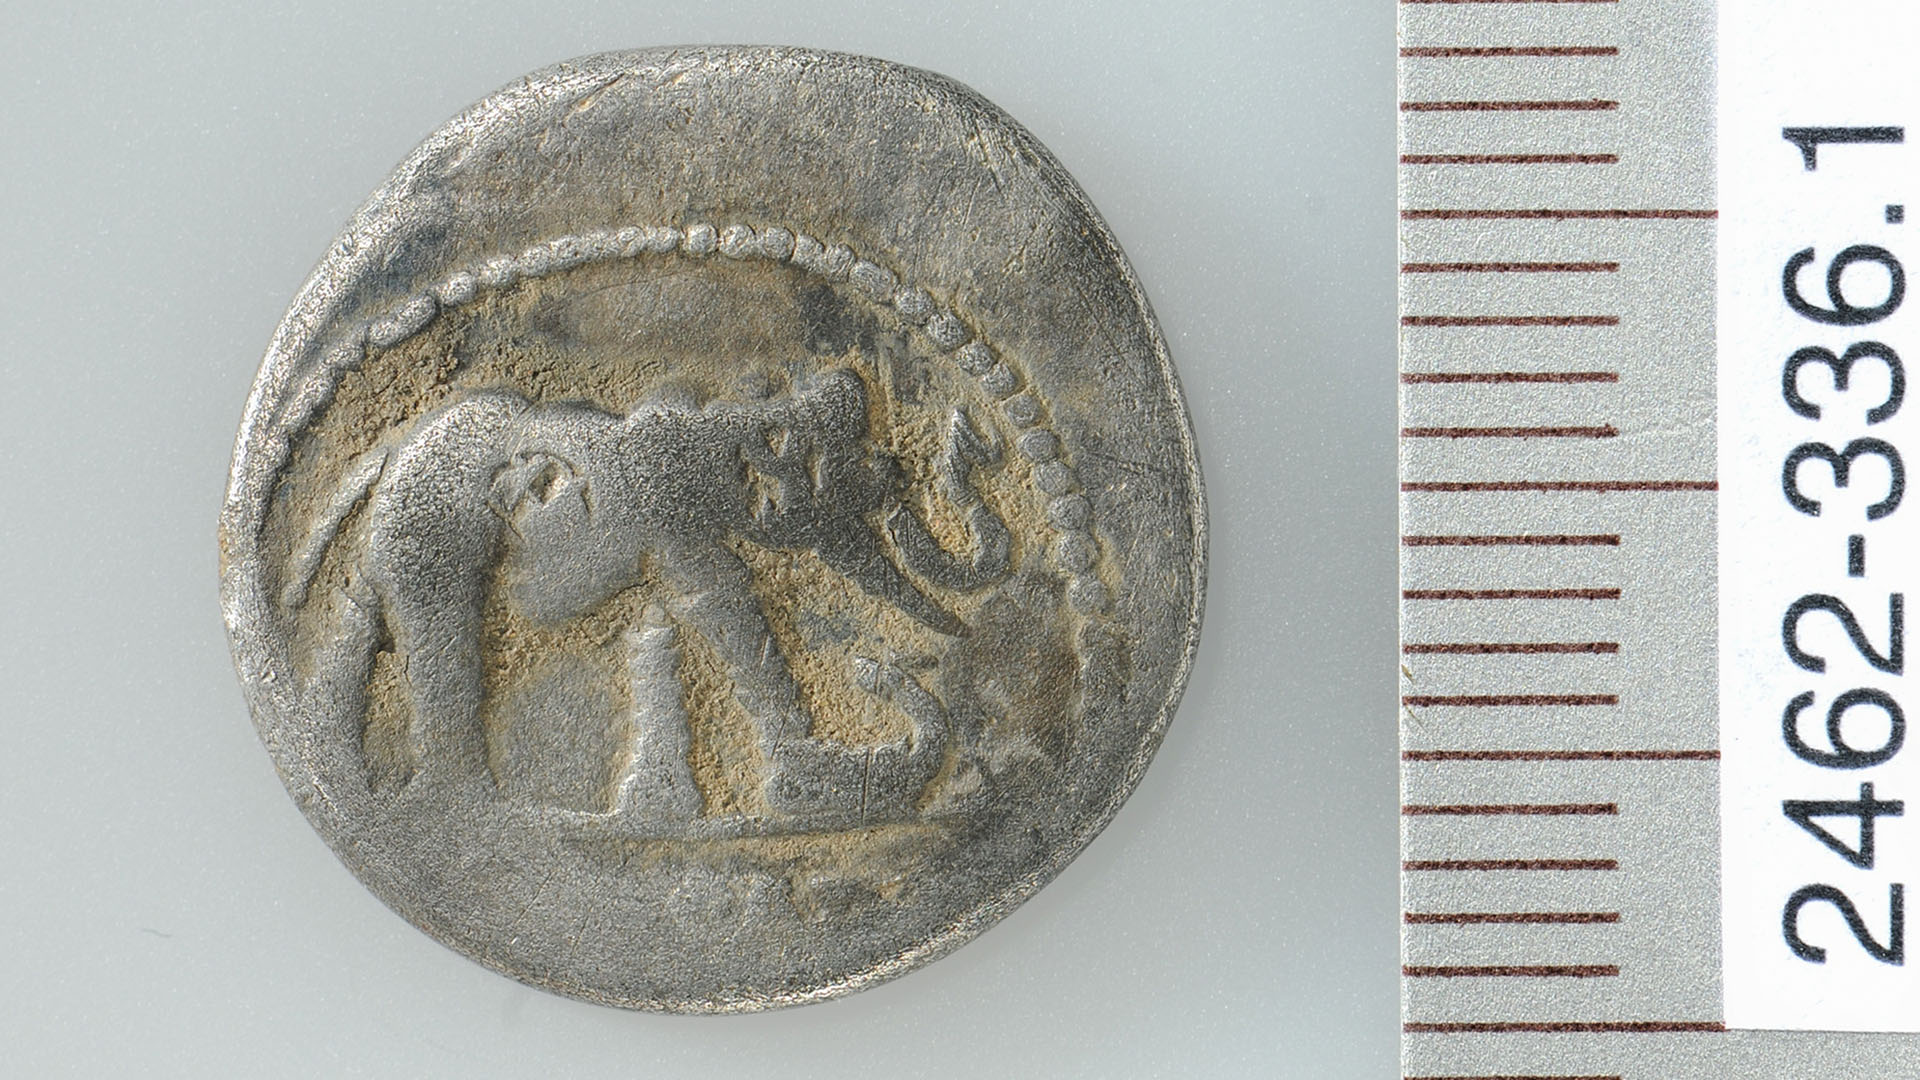 Сребърна монета, изобразяваща слон, тъпчещ змия или малък дракон